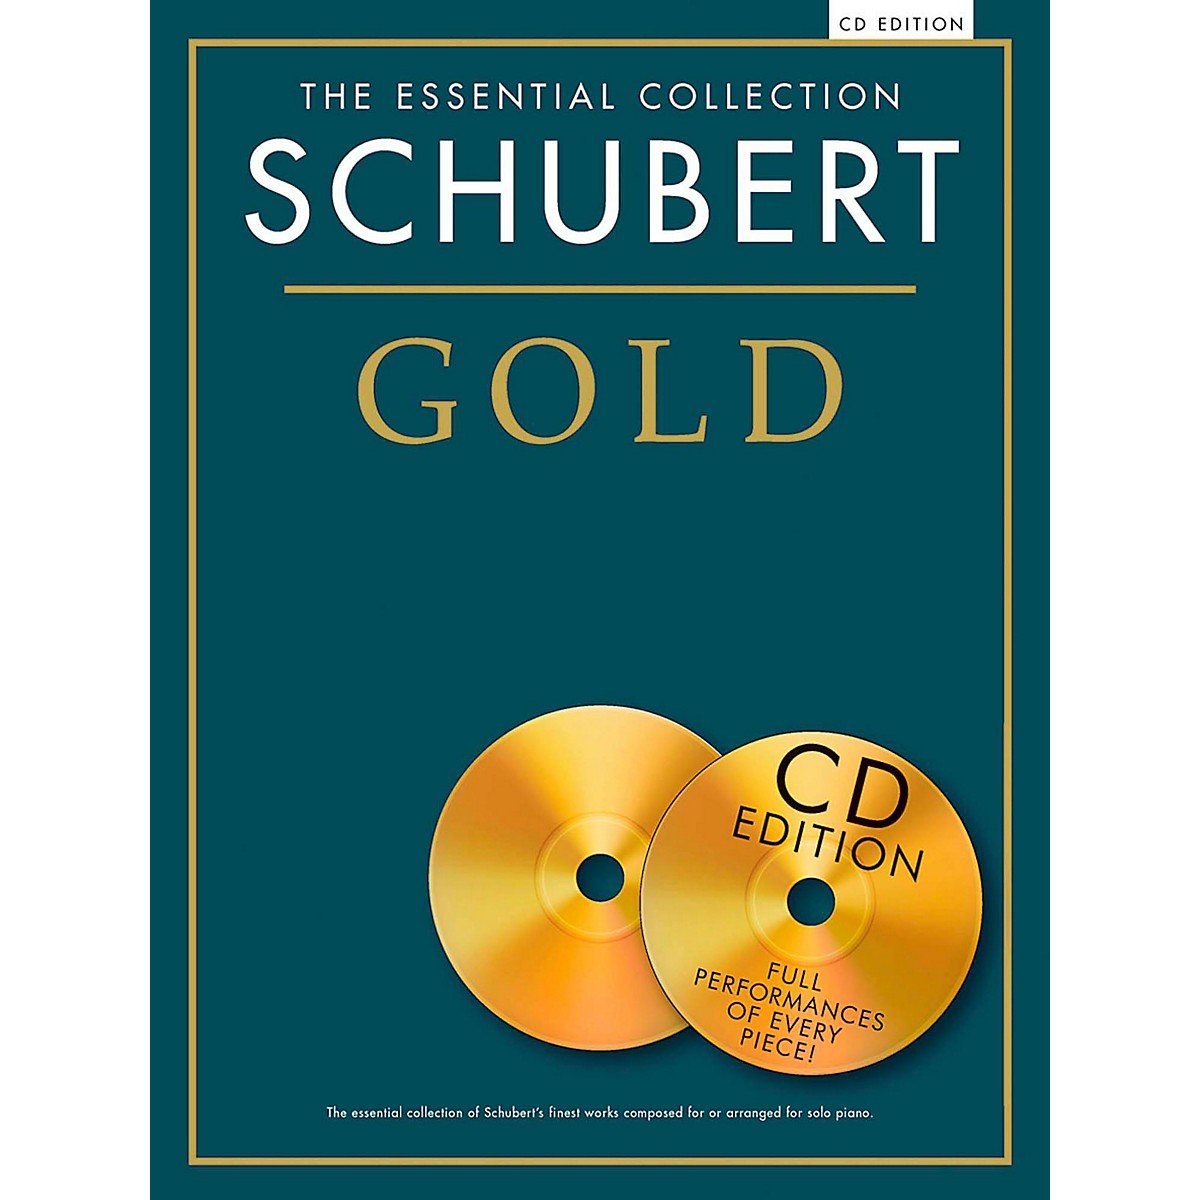 MS Ess Coll Schubert Gold